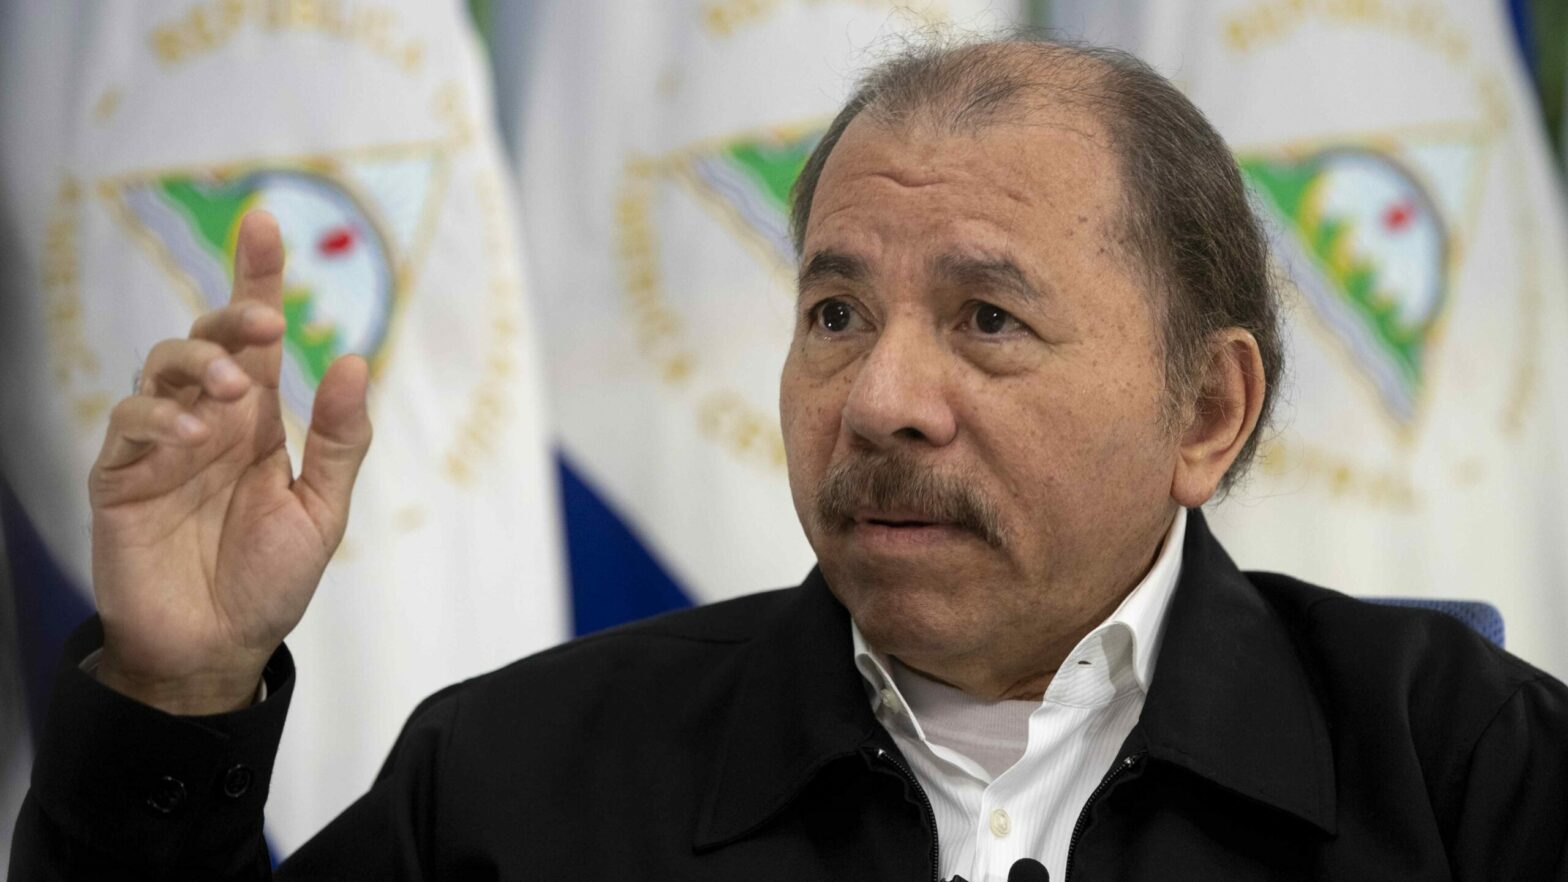 Daniel Ortega, el guerrillero nicaragüense que ni sabía ni quería mandar, se enfrentará a las